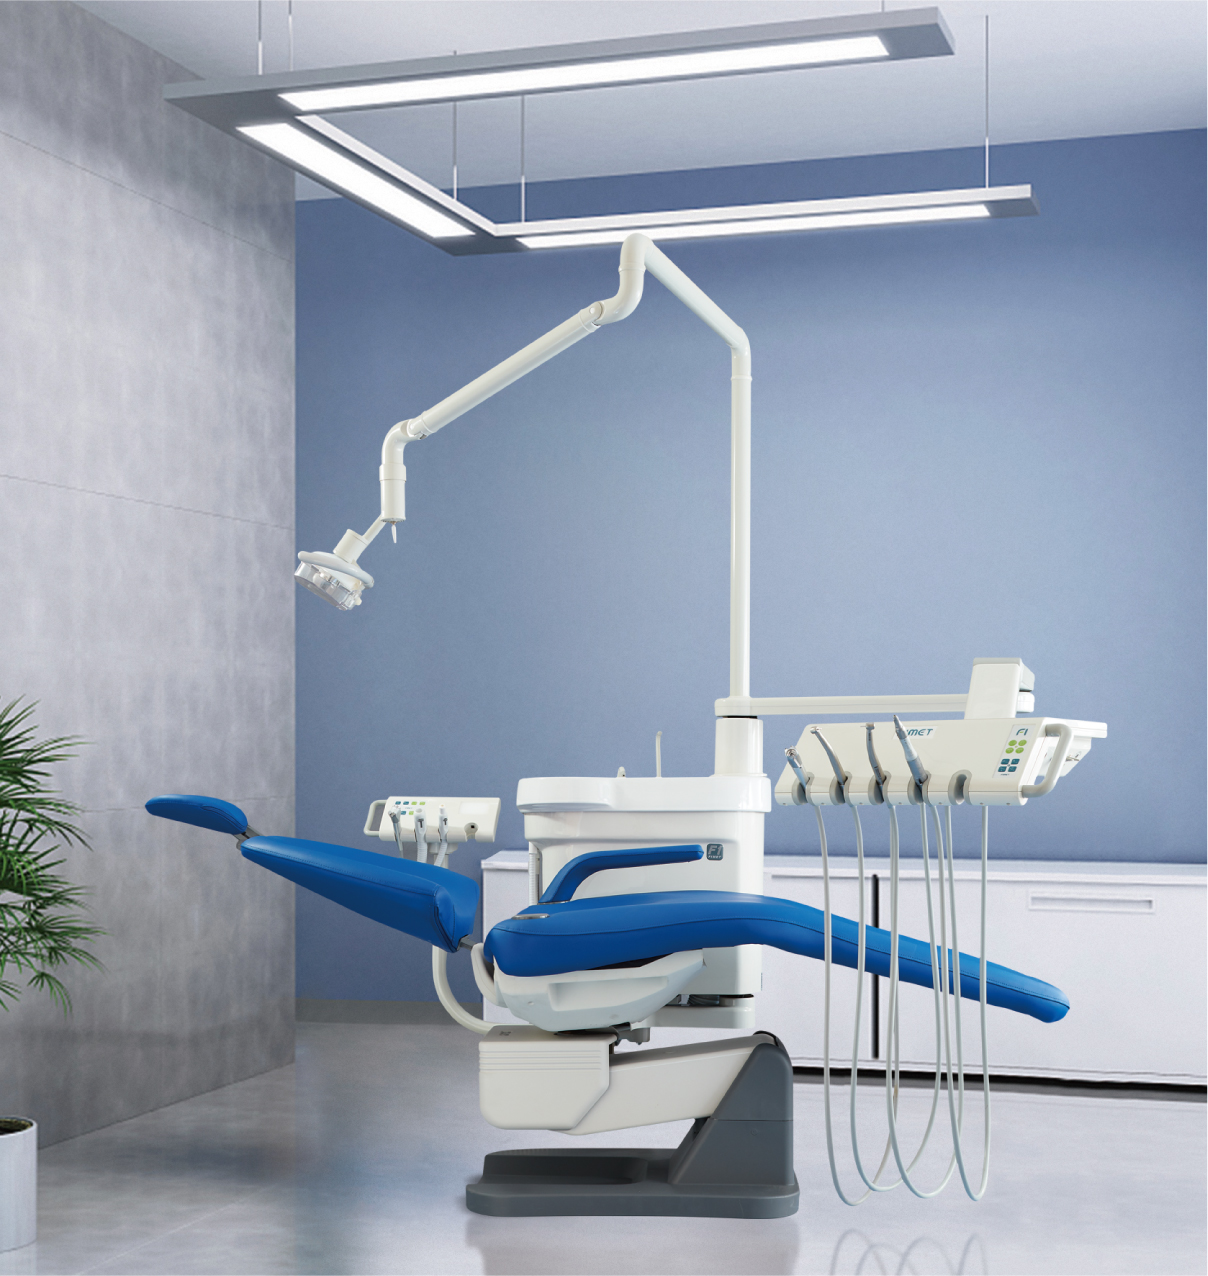 椅装式牙科综合治疗机